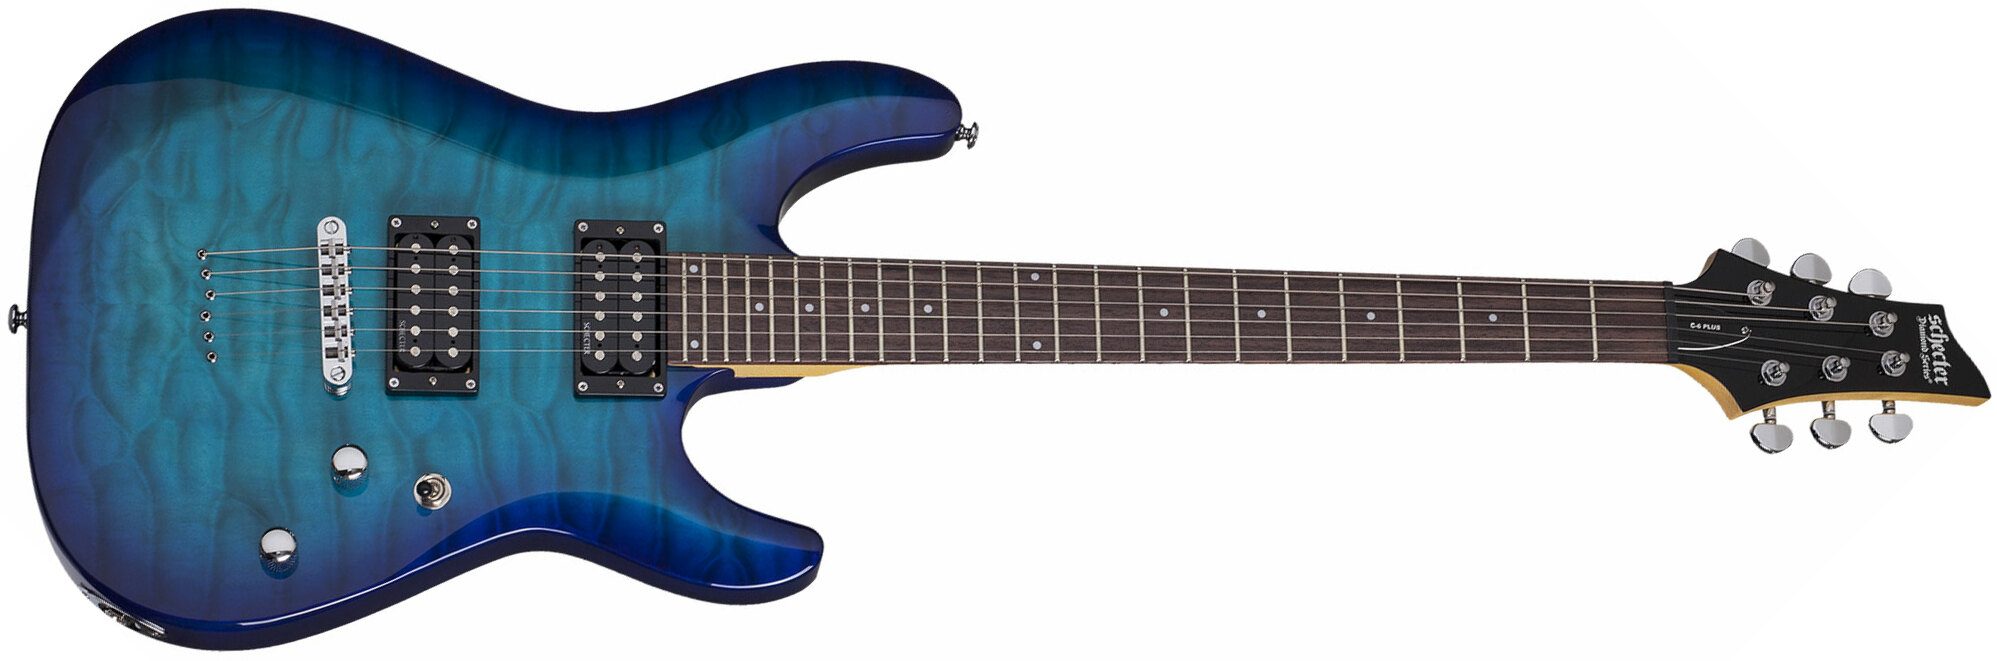 Schecter C-6 Plus 2h Ht Rw - Ocean Blue Burst - Double Cut E-Gitarre - Main picture